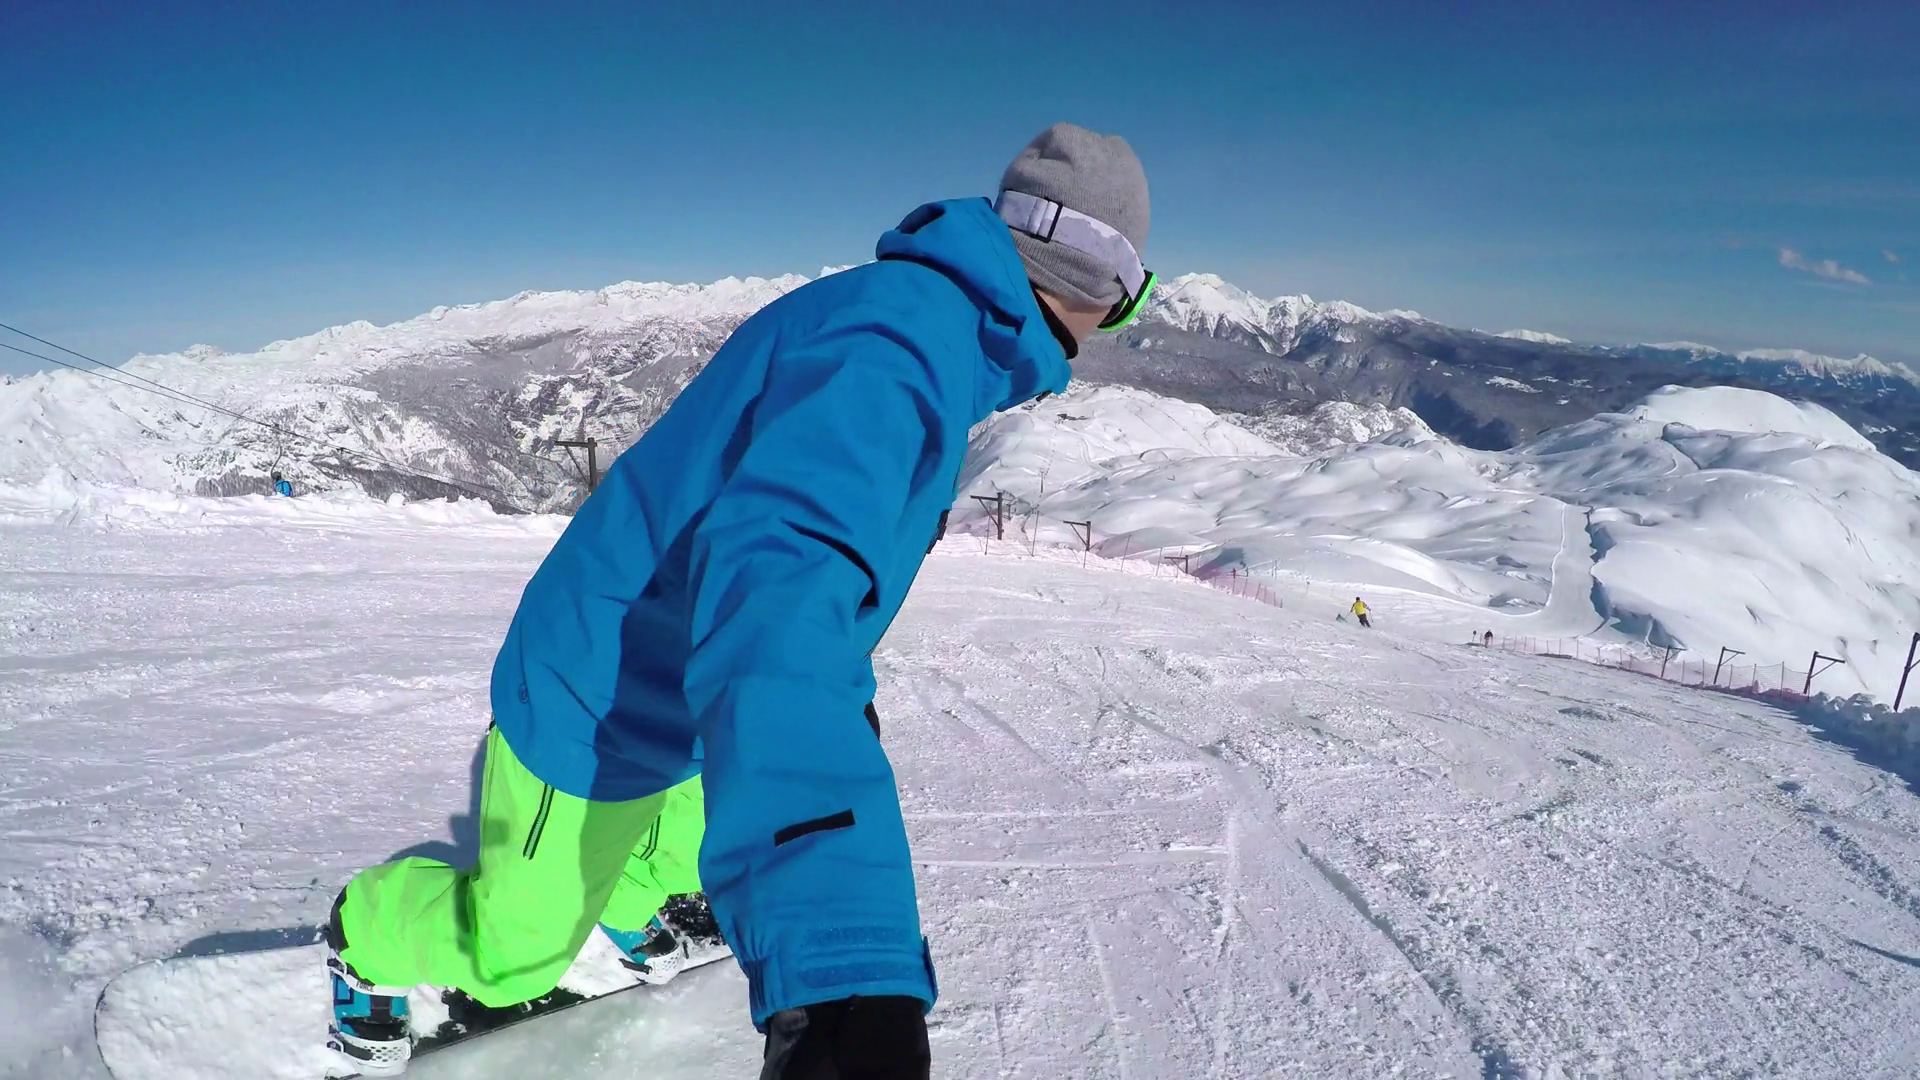 Extreme snowboarder speeding down the ski slope in snowy mountain ...